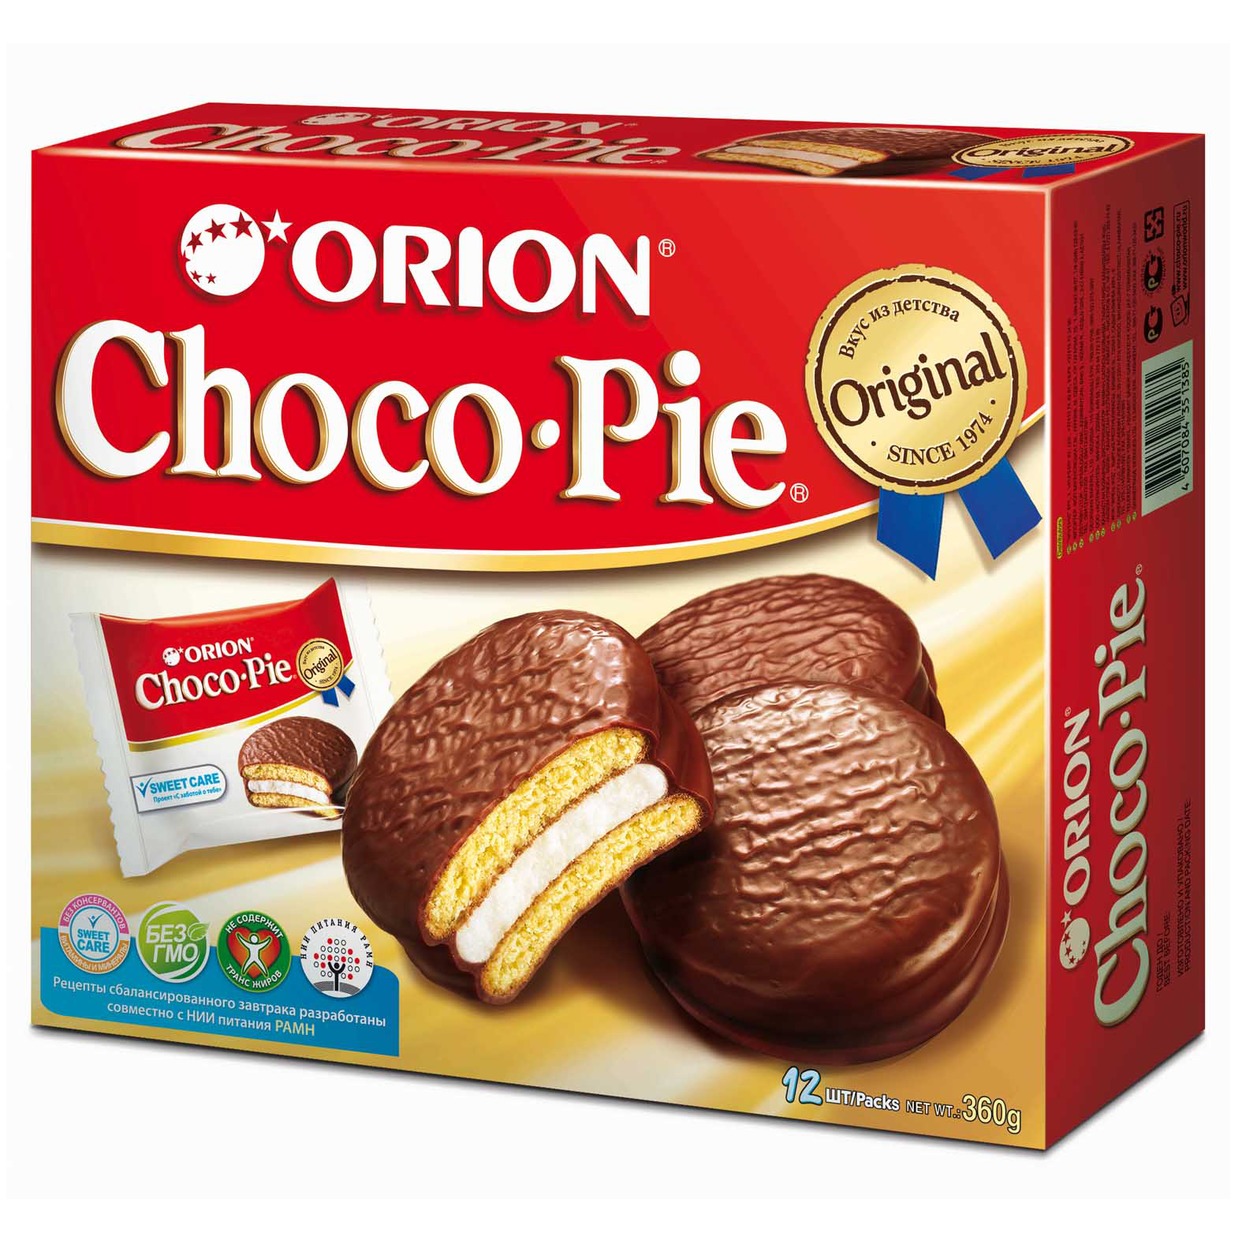 Пирожное Orion Choco Pie в глазури 12шт*30г по акции в Пятерочке